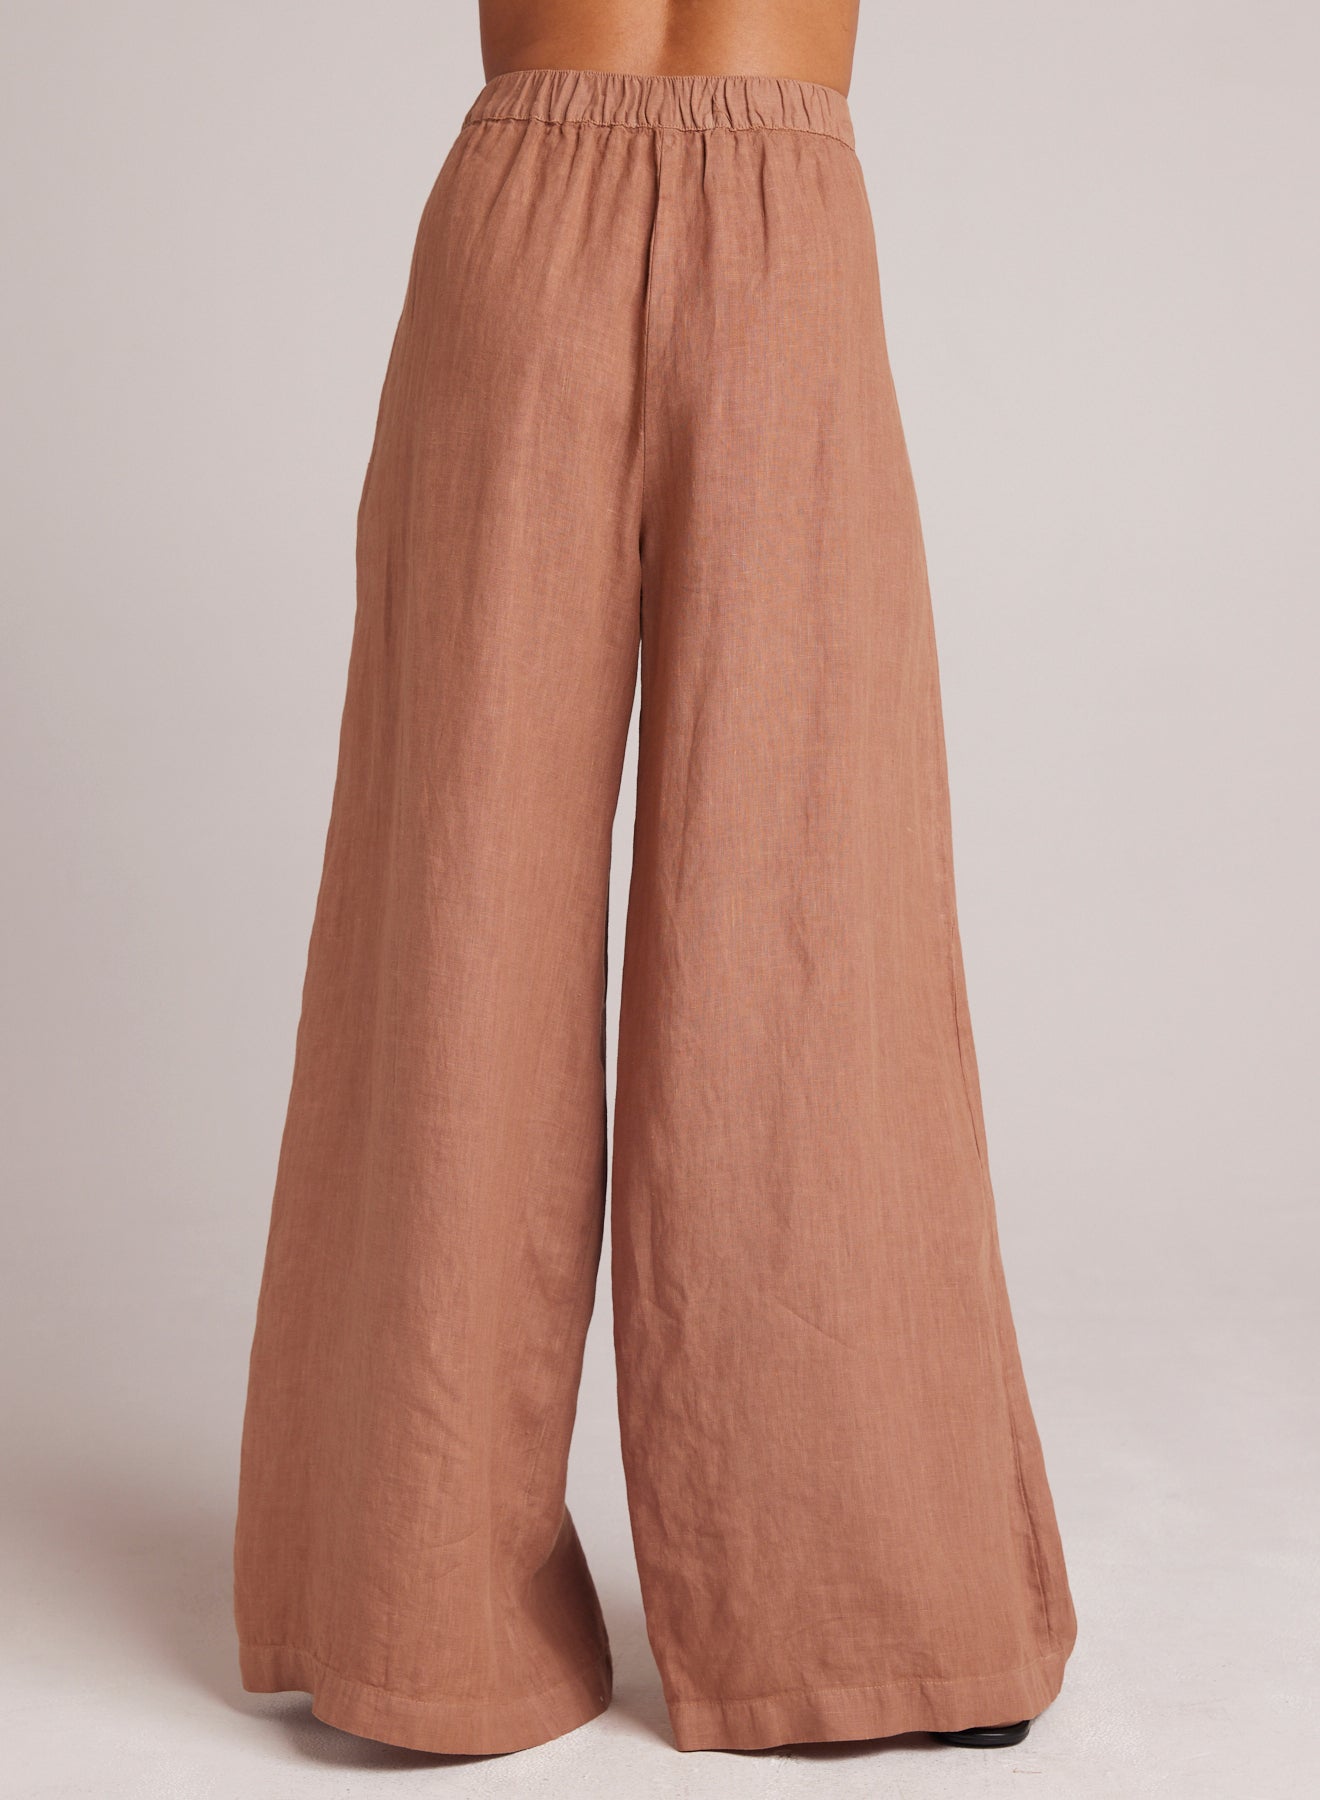 Bella DahlHigh Waisted Linen Pleated Pant - Desert BrownBottoms